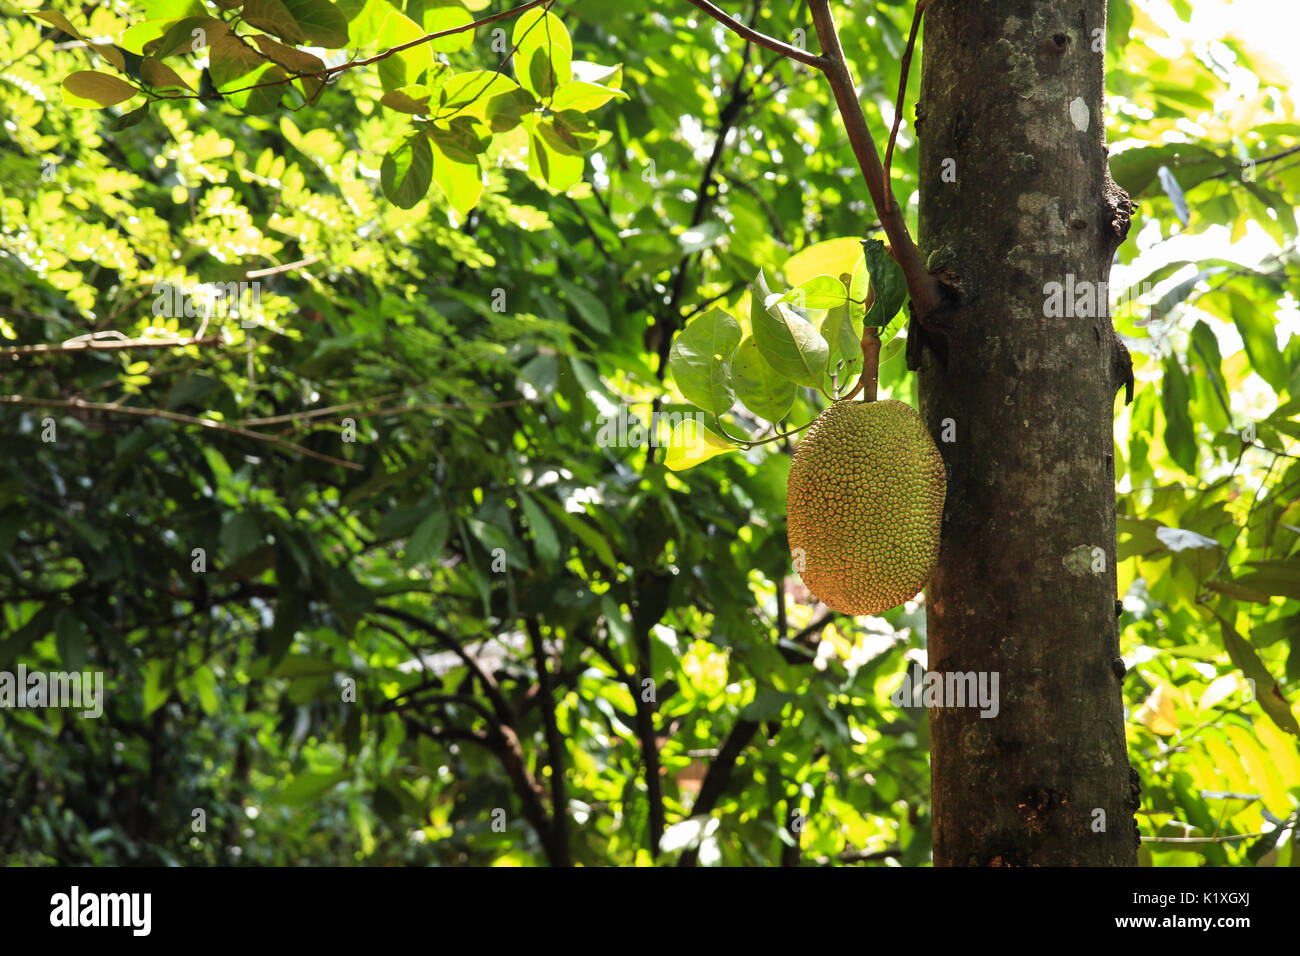 A jackfruit tree in Matale, Sri Lanka Stock Photo